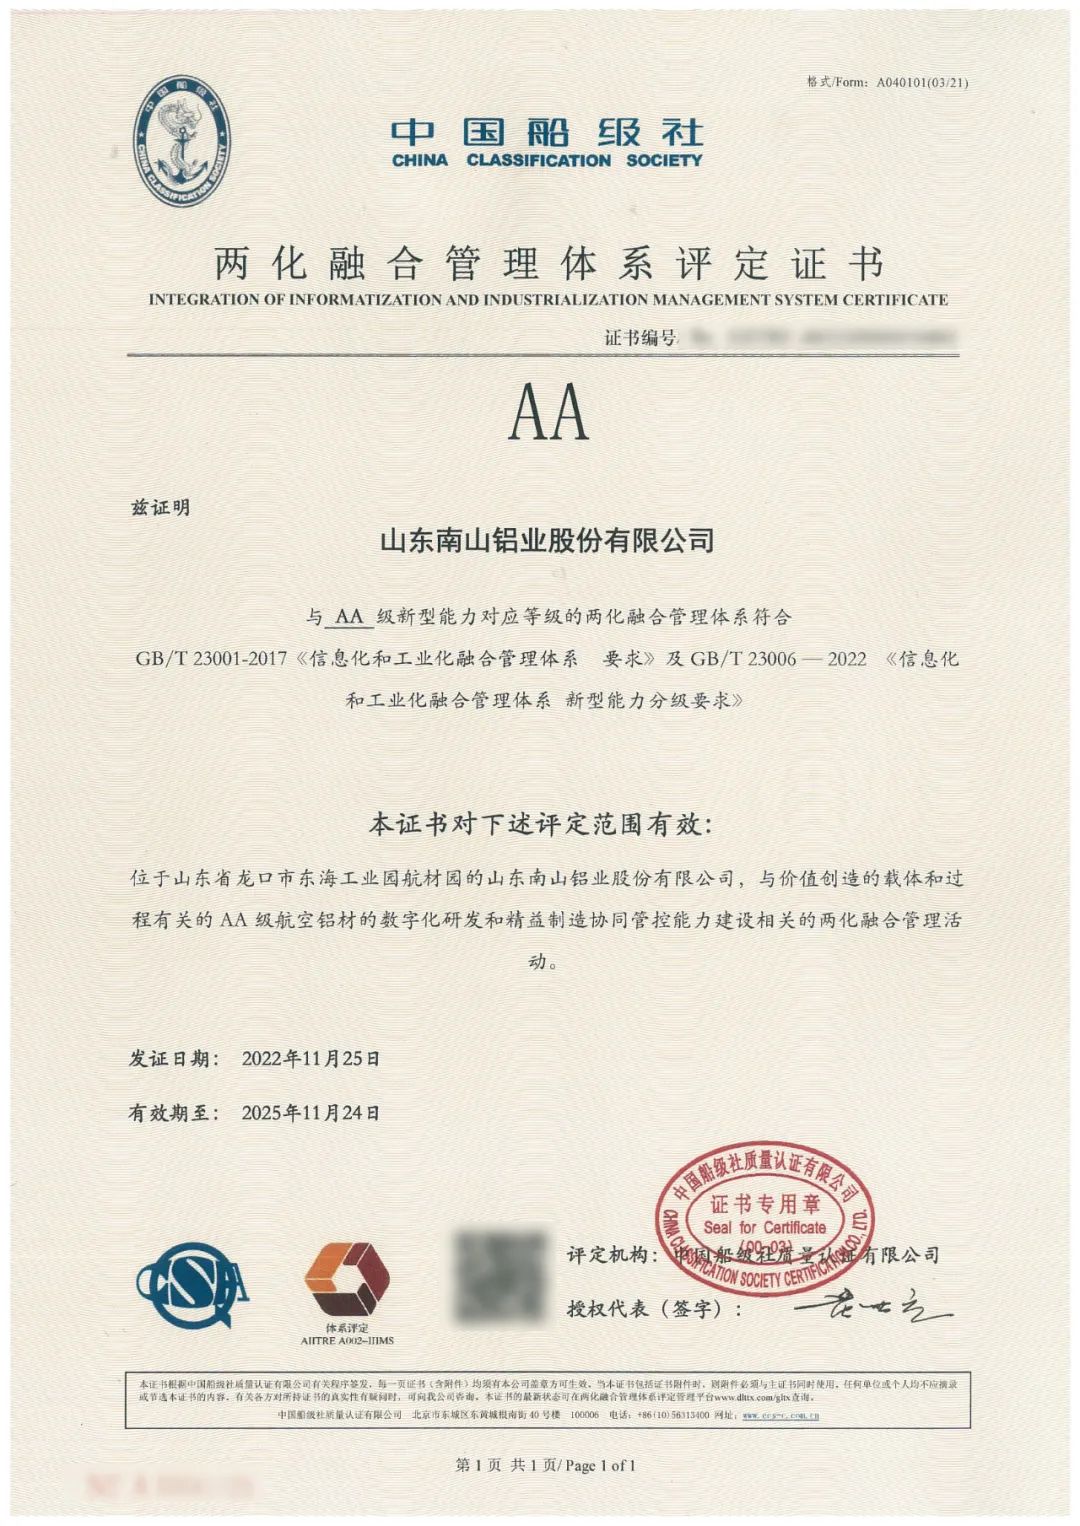 南山铝业完成两化融合管理体系“AA”升级认证